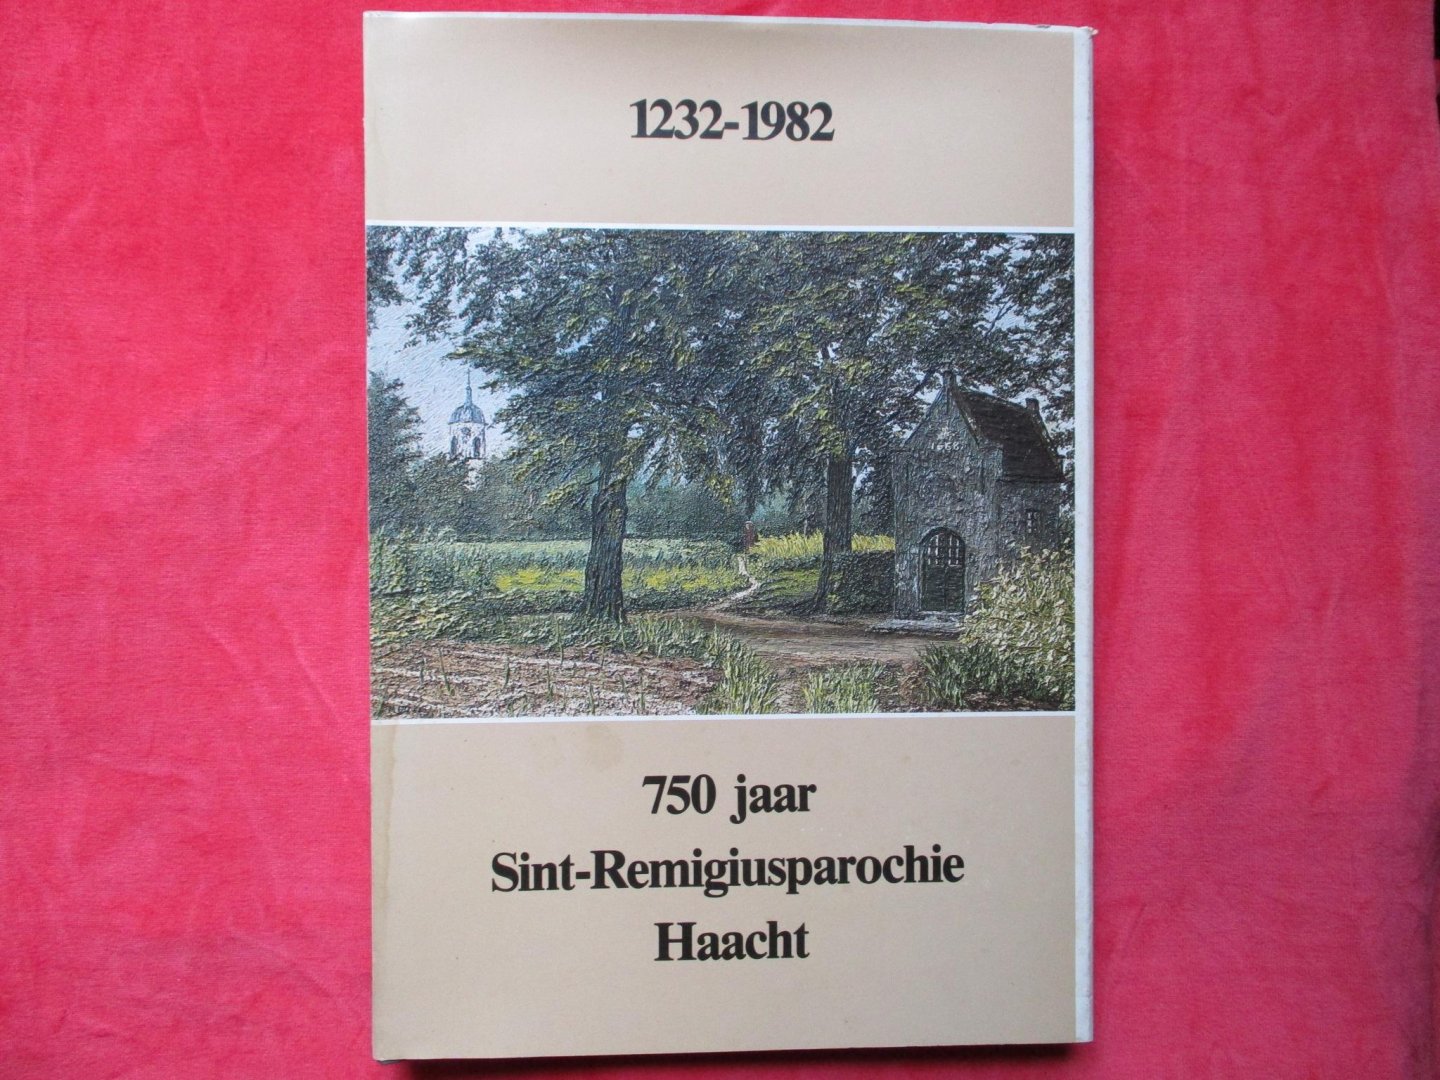 Cools, Jos & André Van Aerschot - 750 jaar Sint-Remigiusparochie Haacht. 1232-1982.